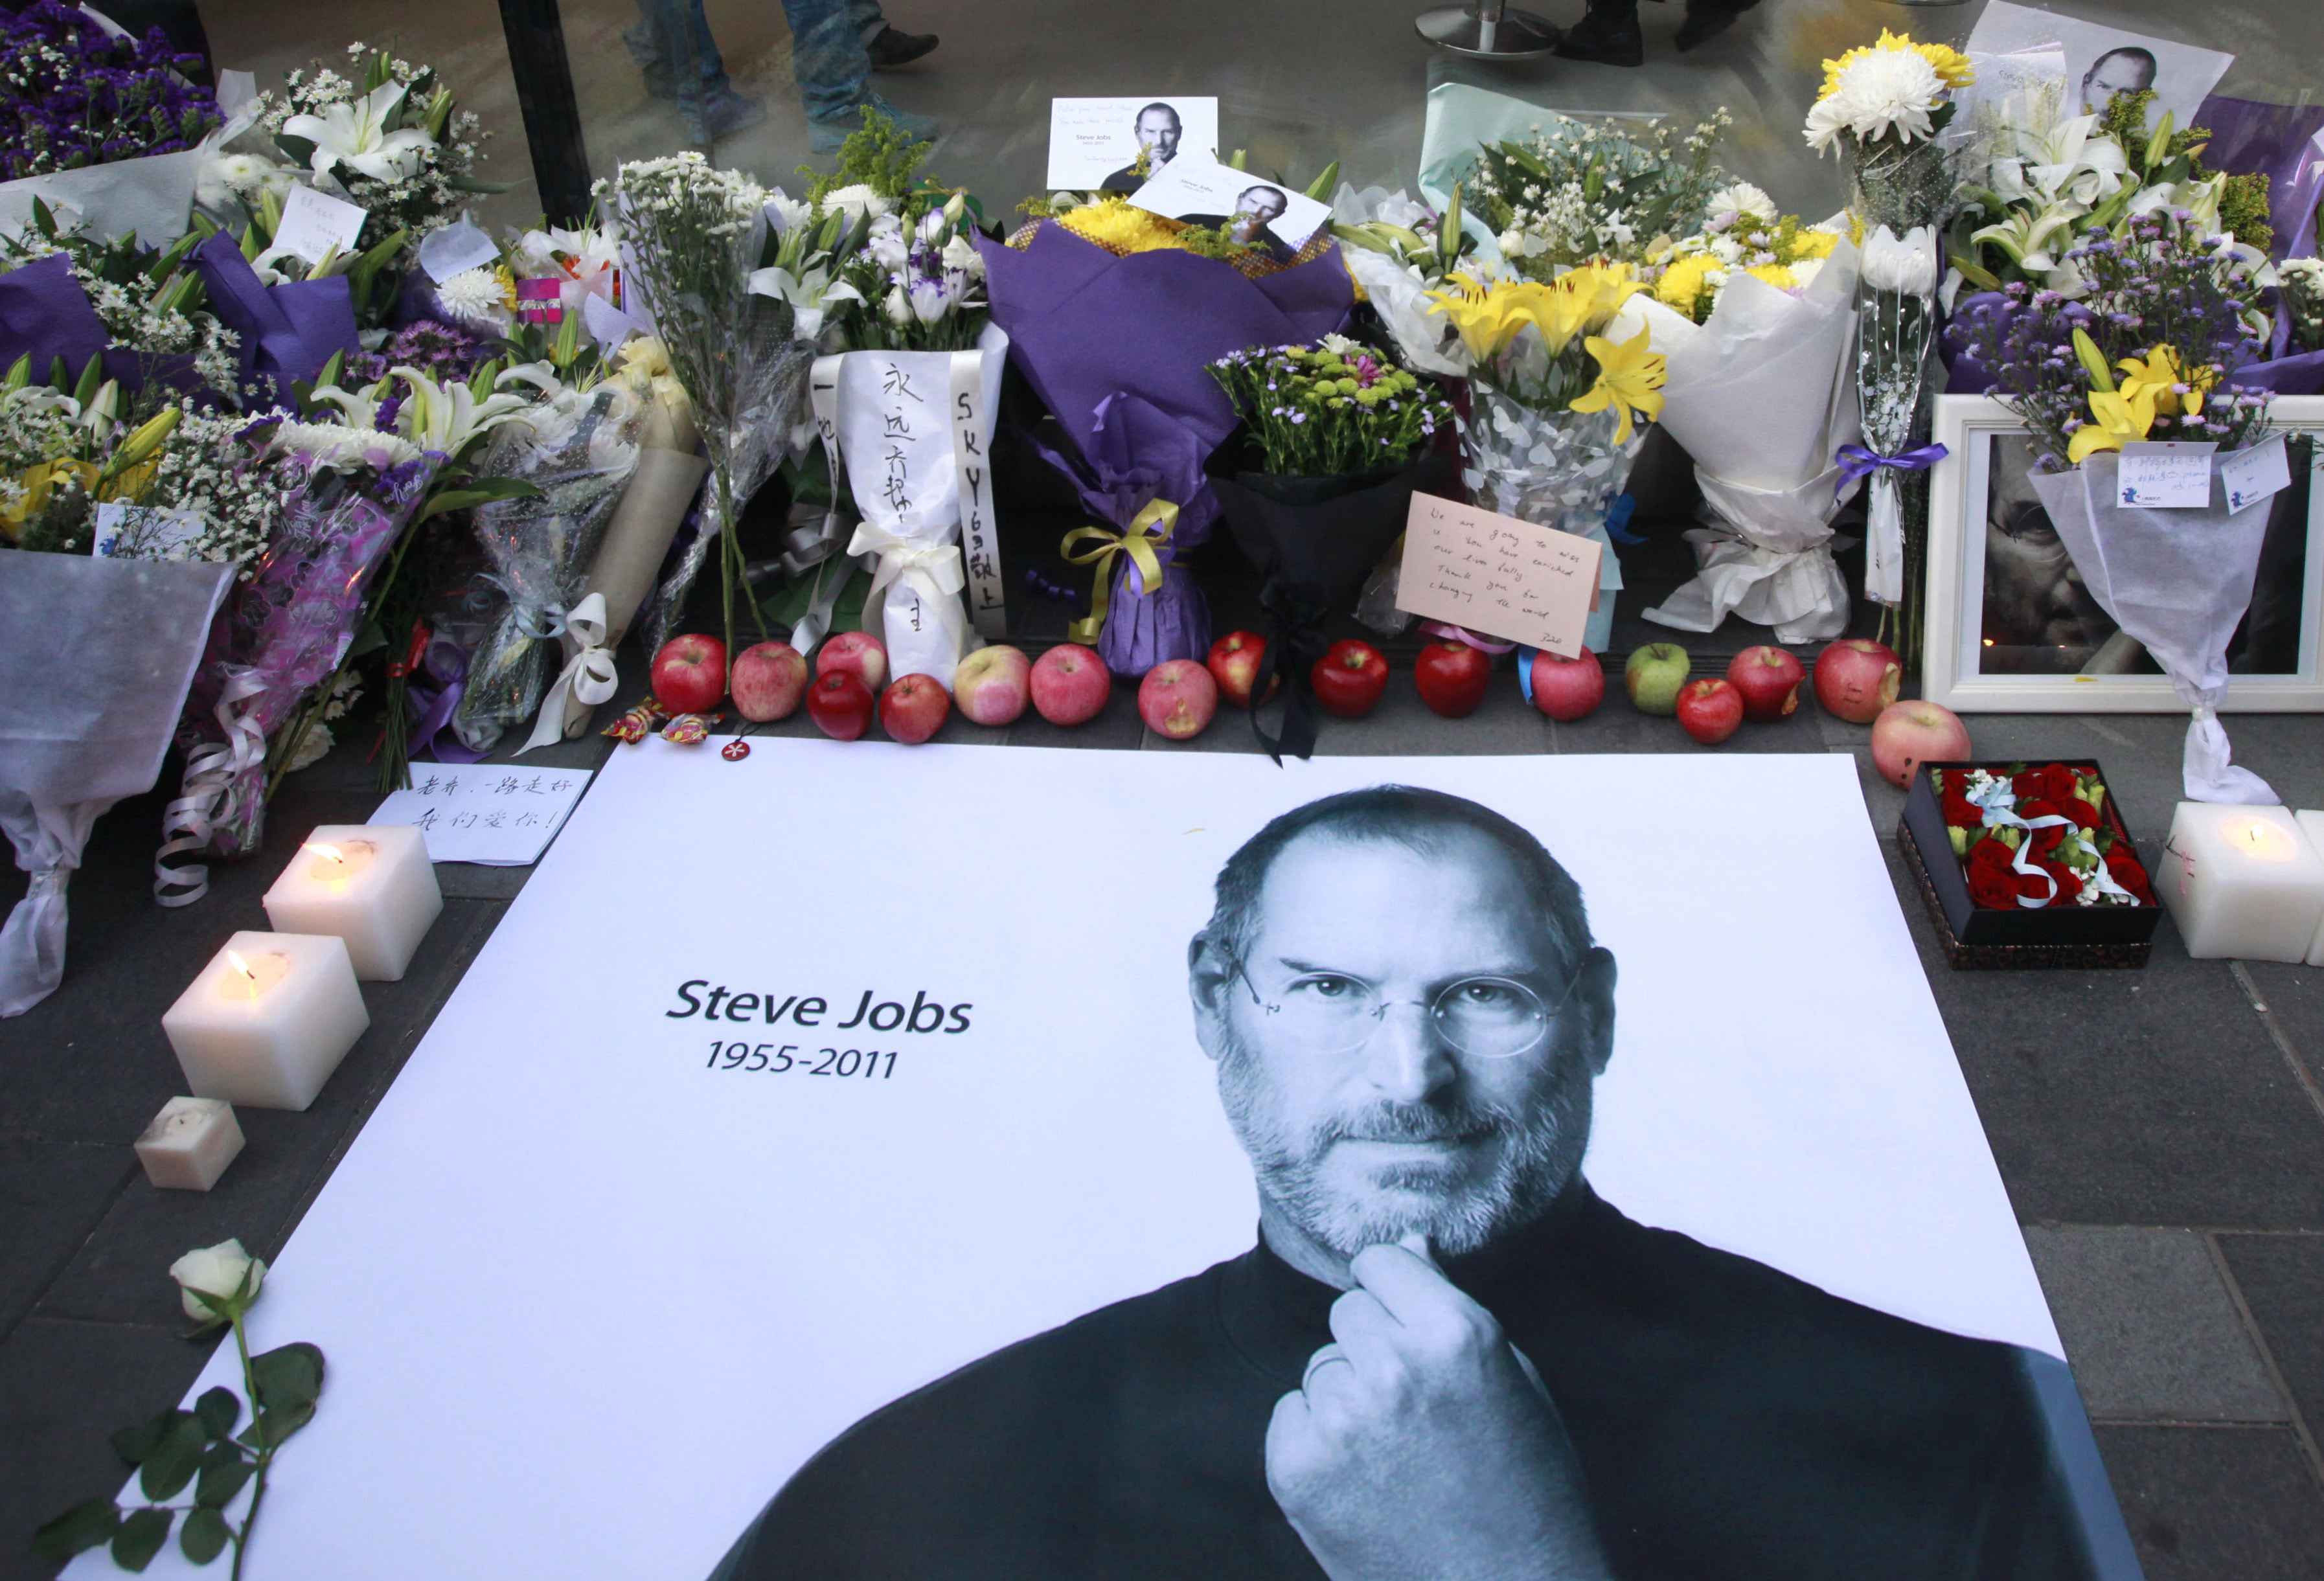 Cancer, Iphone, Steve Jobs, Apple